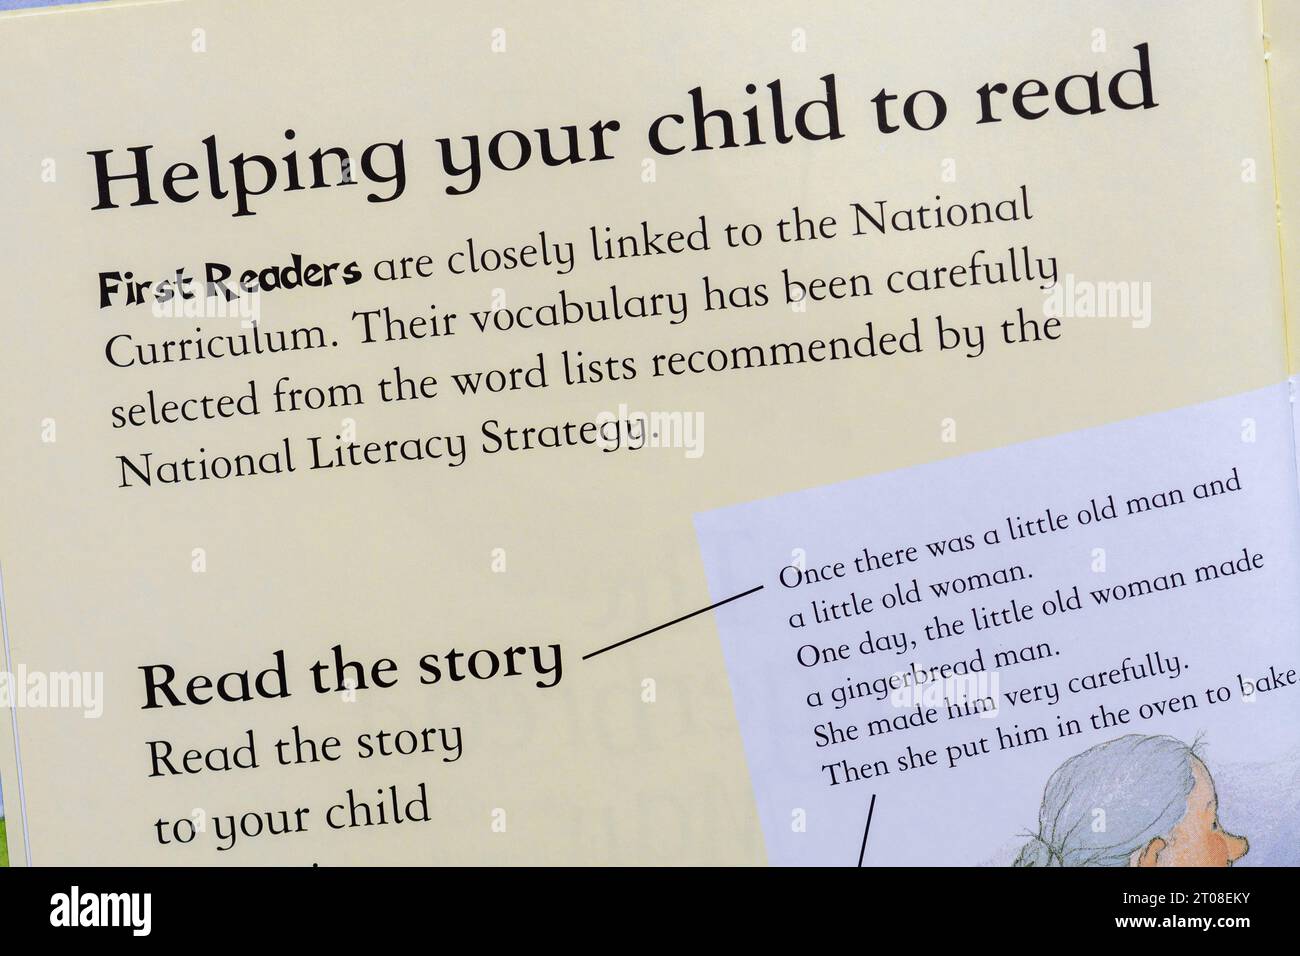 Dettaglio del libro per bambini, prima serie di libri per lettori. Concetto: Imparare a leggere, insegnare la lettura, istruzione precoce, strategia nazionale di alfabetizzazione Foto Stock